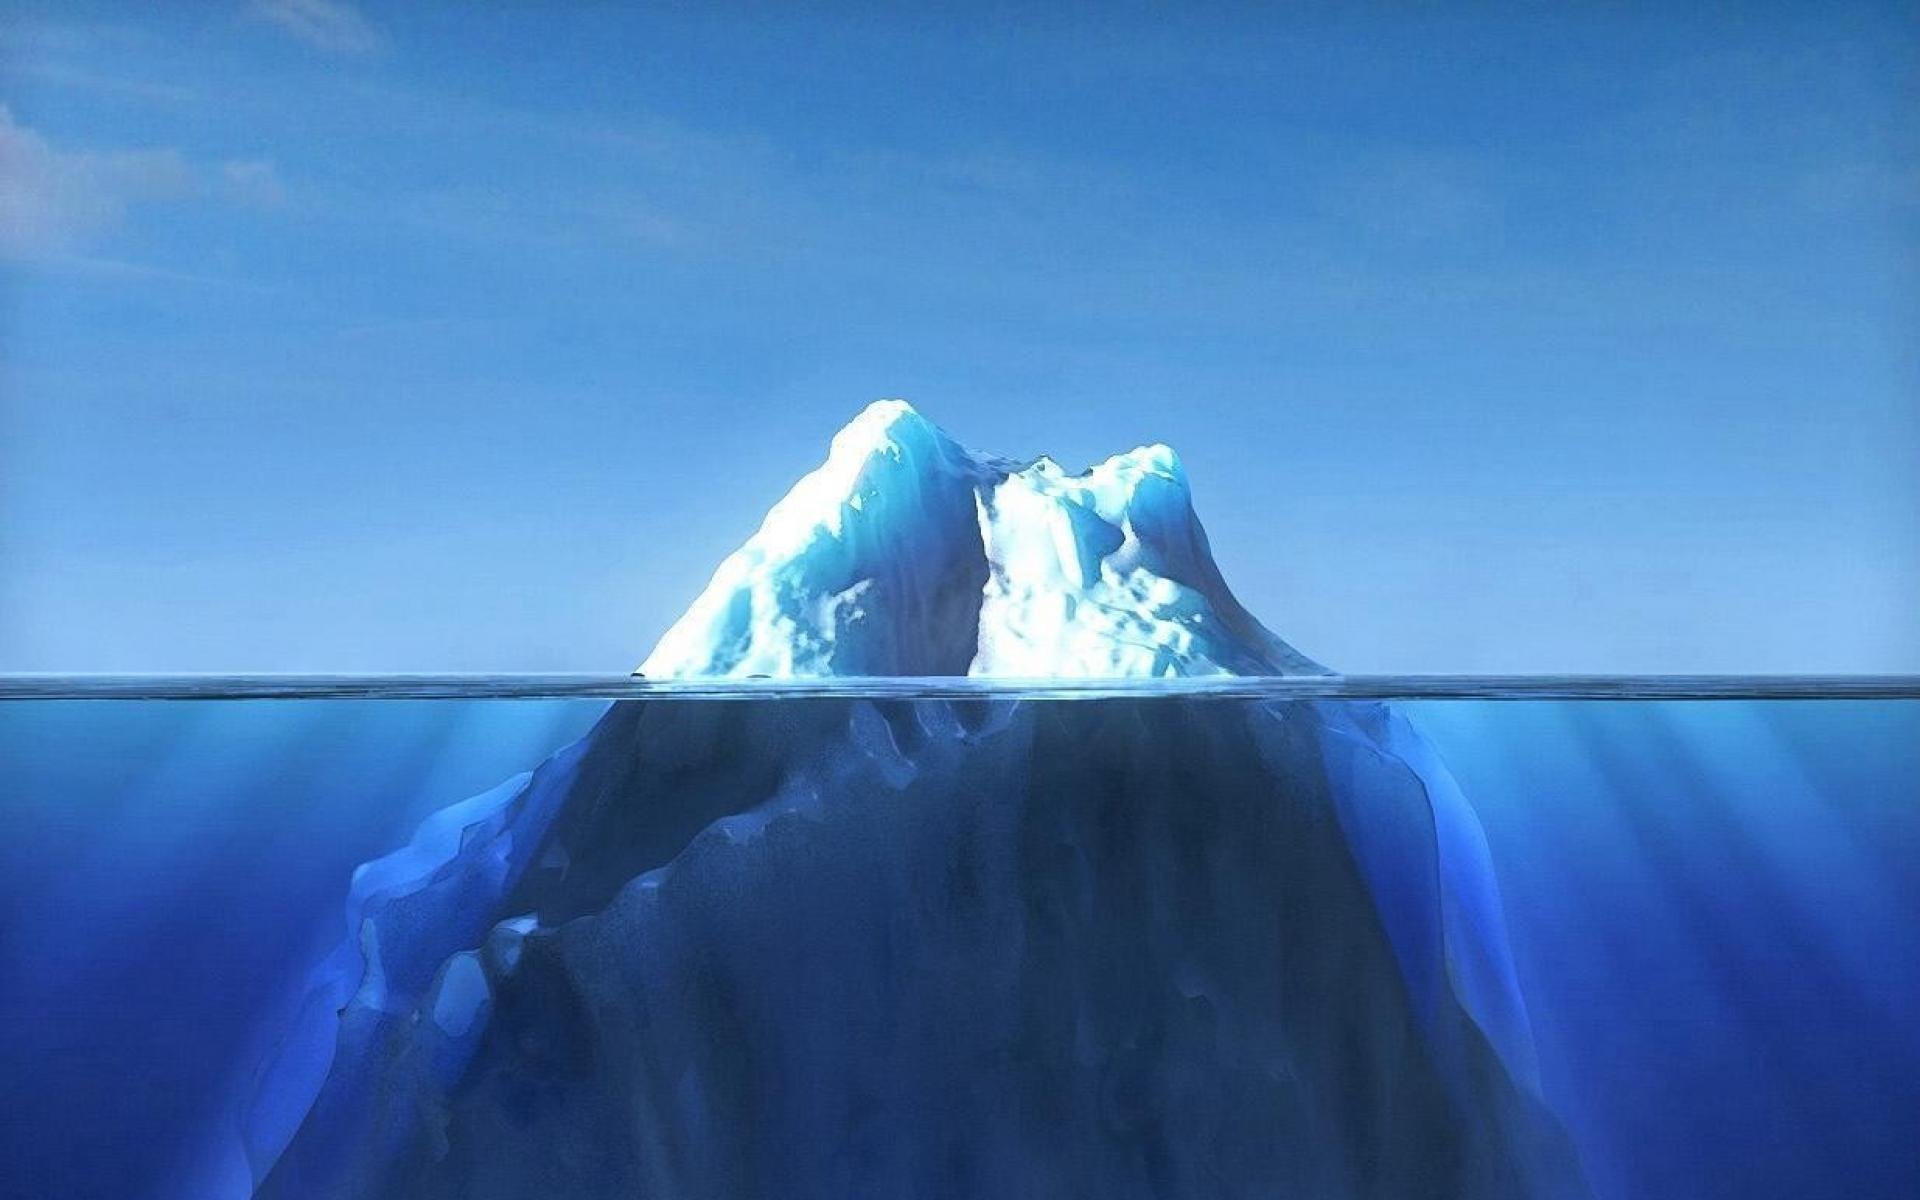 Какая часть айсберга над водой